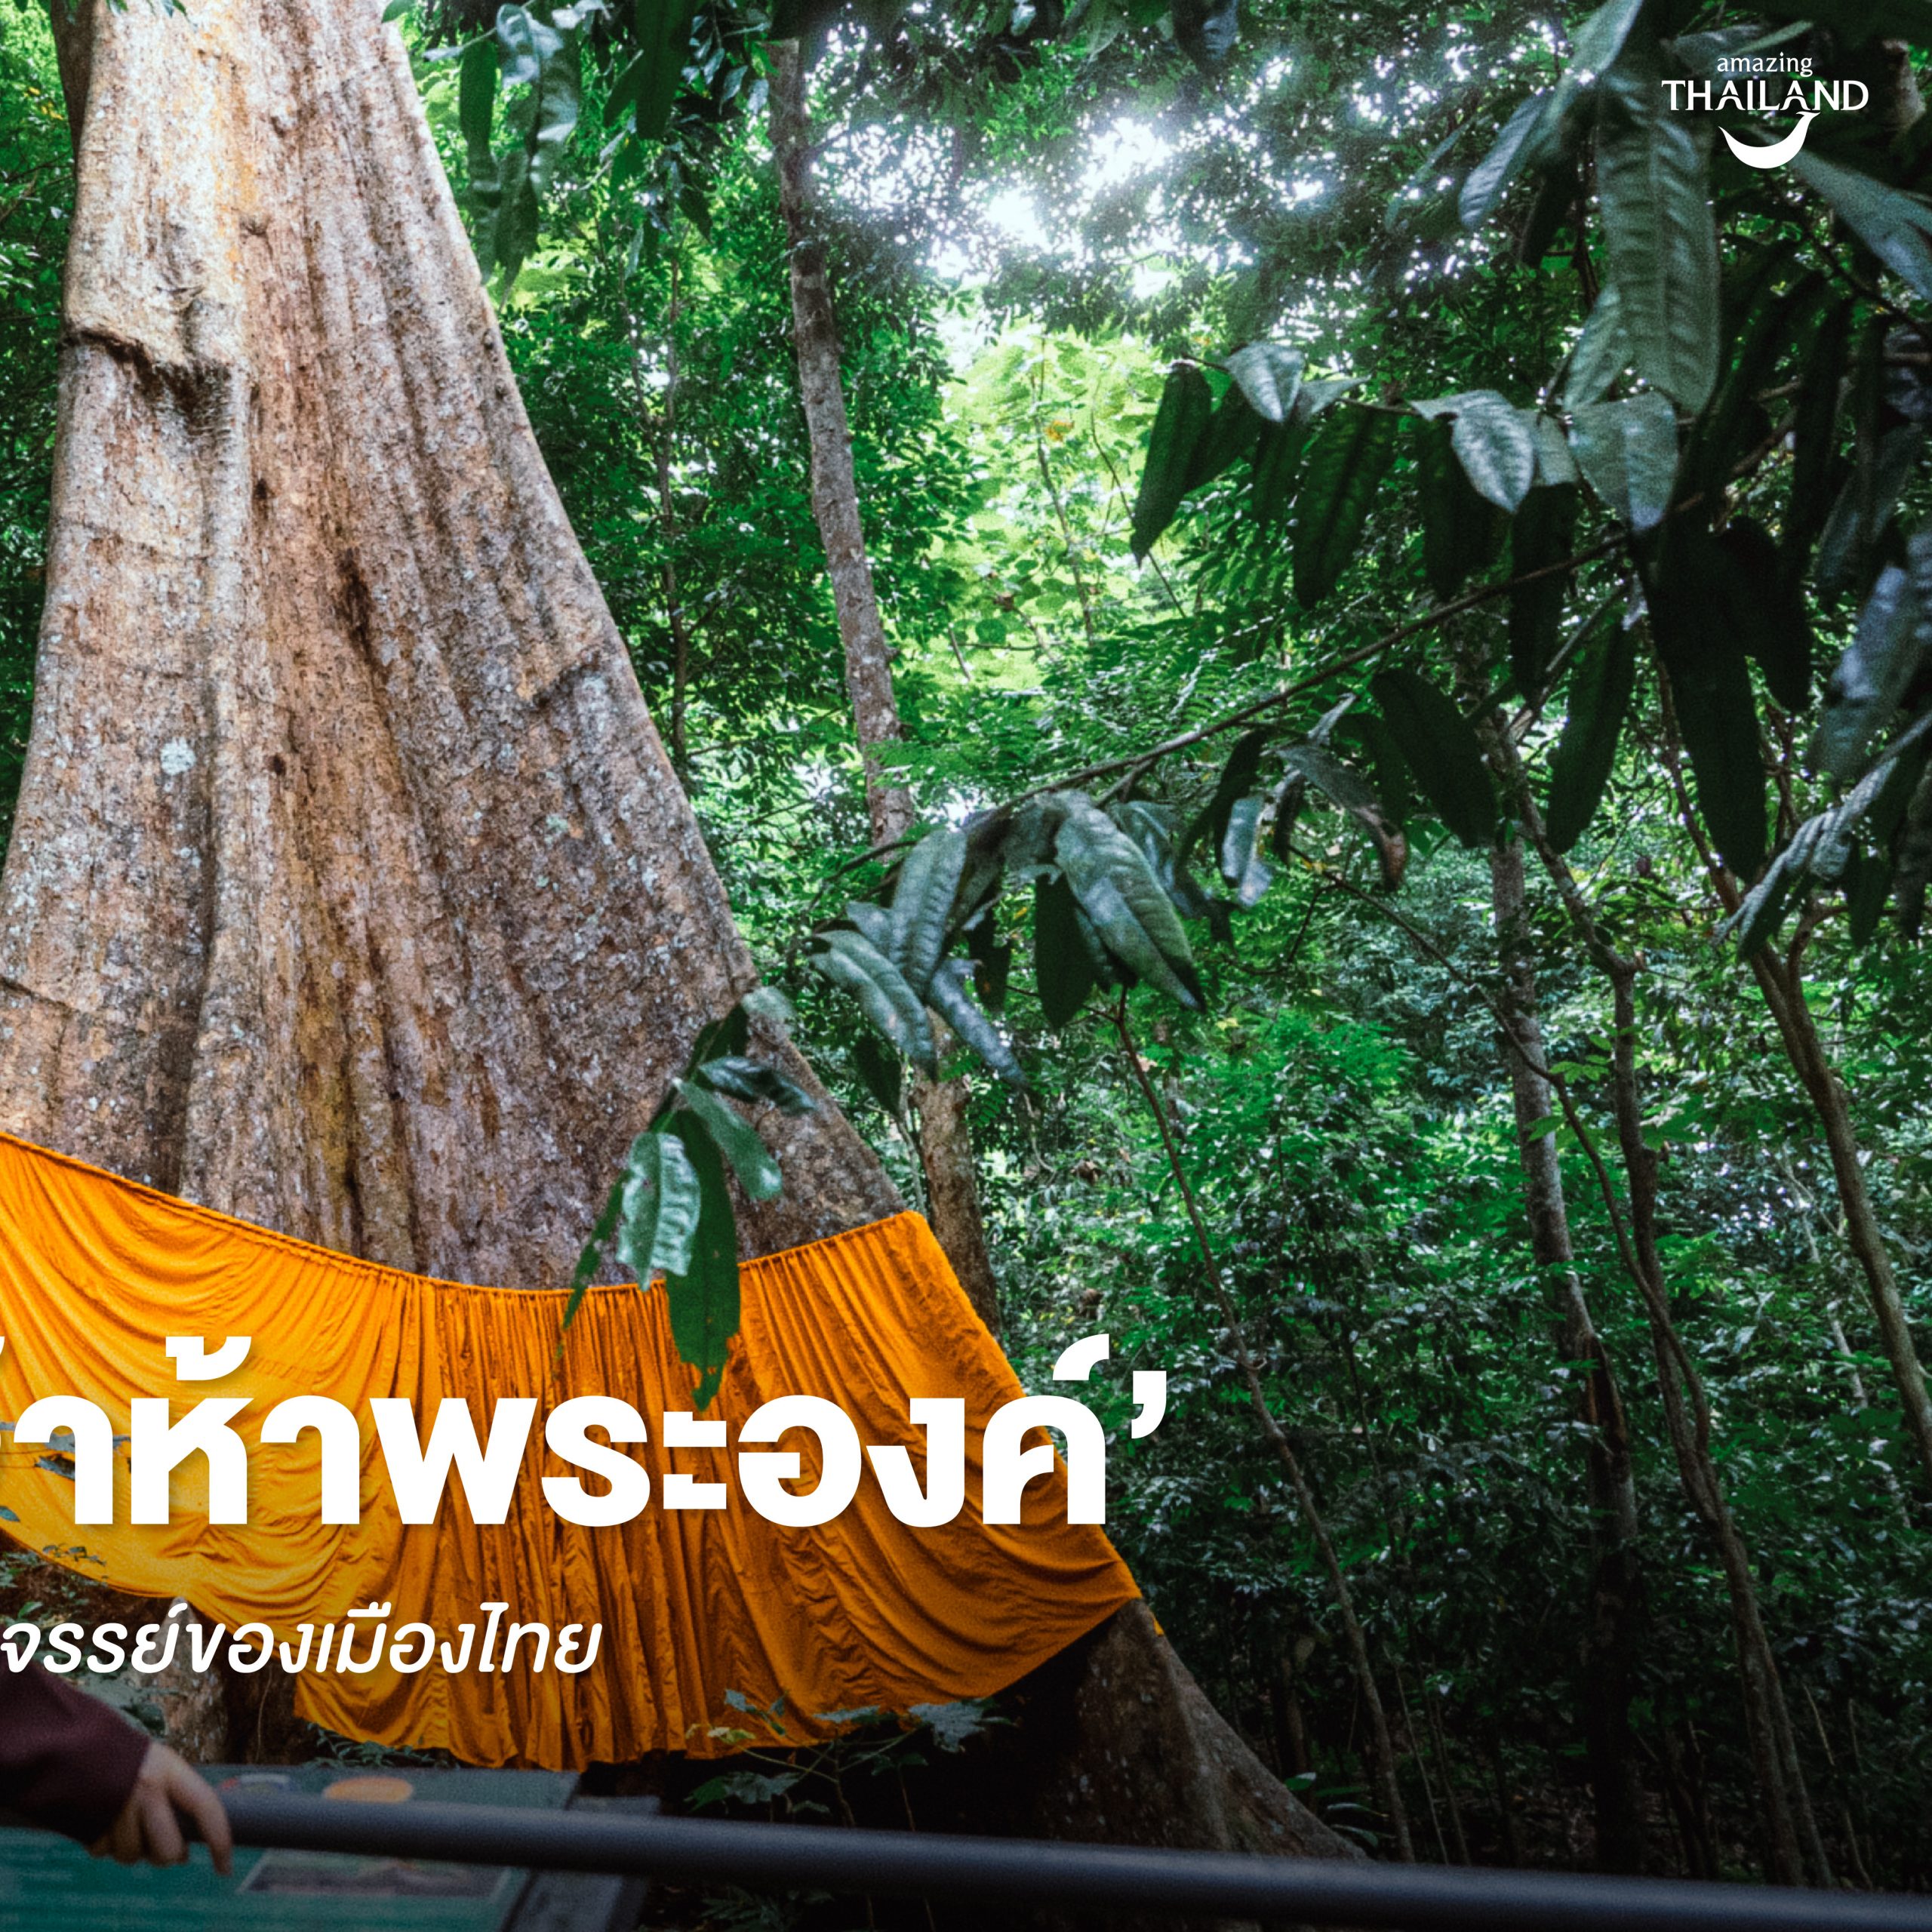 #ChonJourney  ชม ‘ต้นพระเจ้าห้าพระองค์’ 1 ใน 10 ต้นไม้มหัศจรรย์ของเมืองไทย